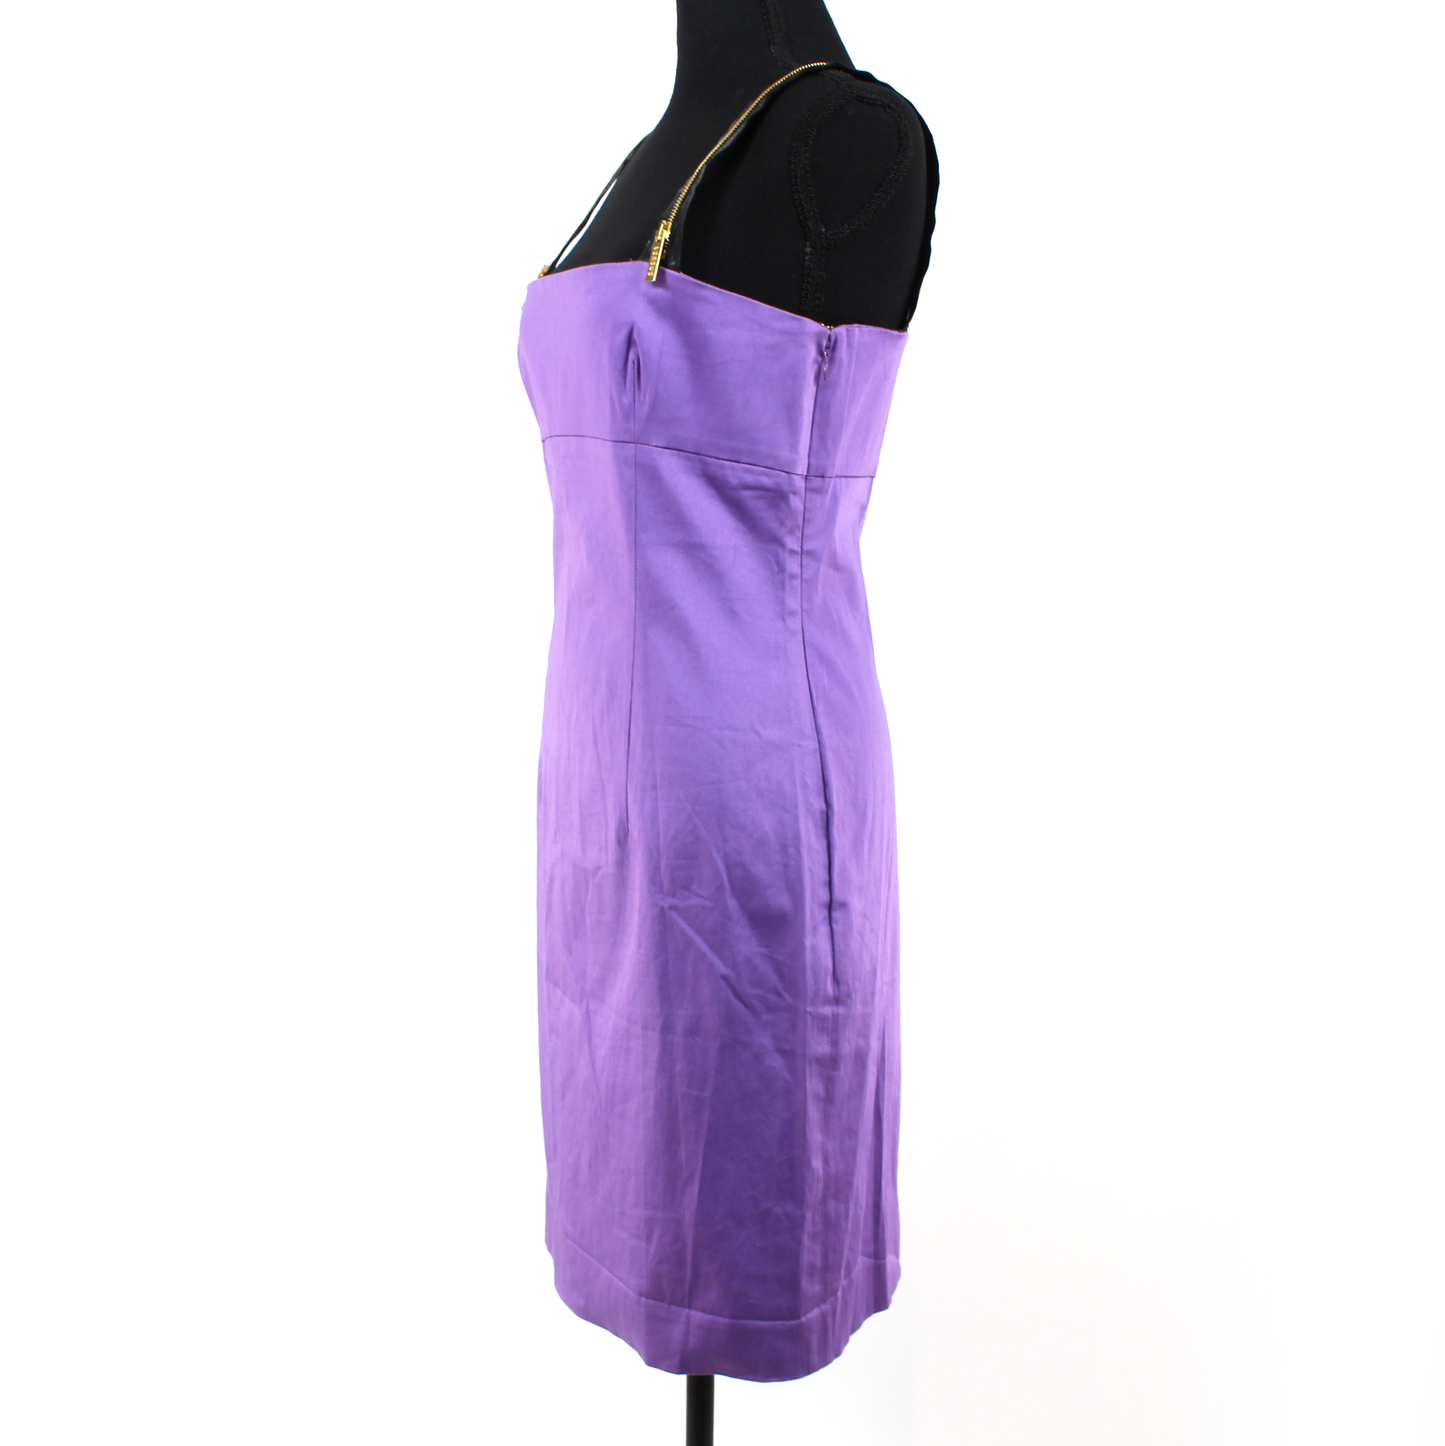 Versus Versace Zipper Shoulder Mini Dress